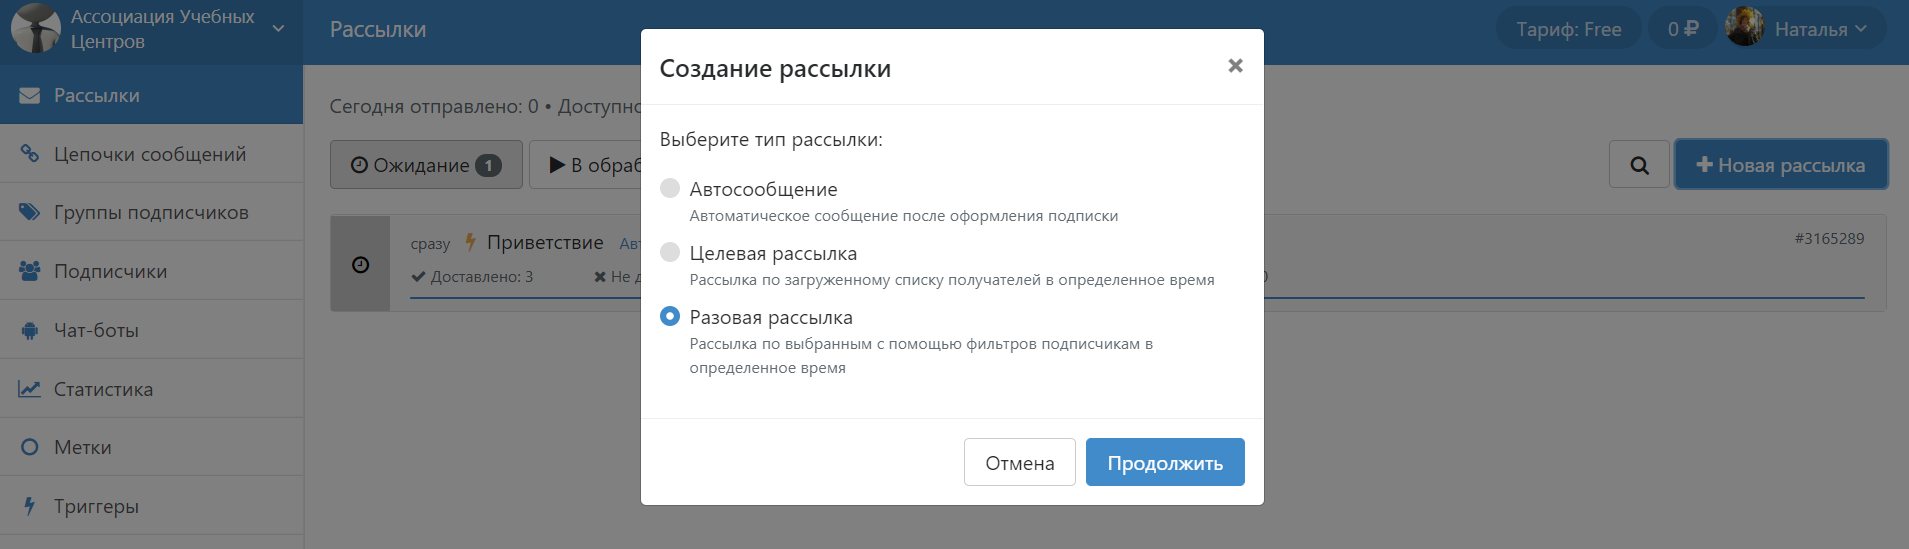 Сервисы для рассылок во ВКонтакте